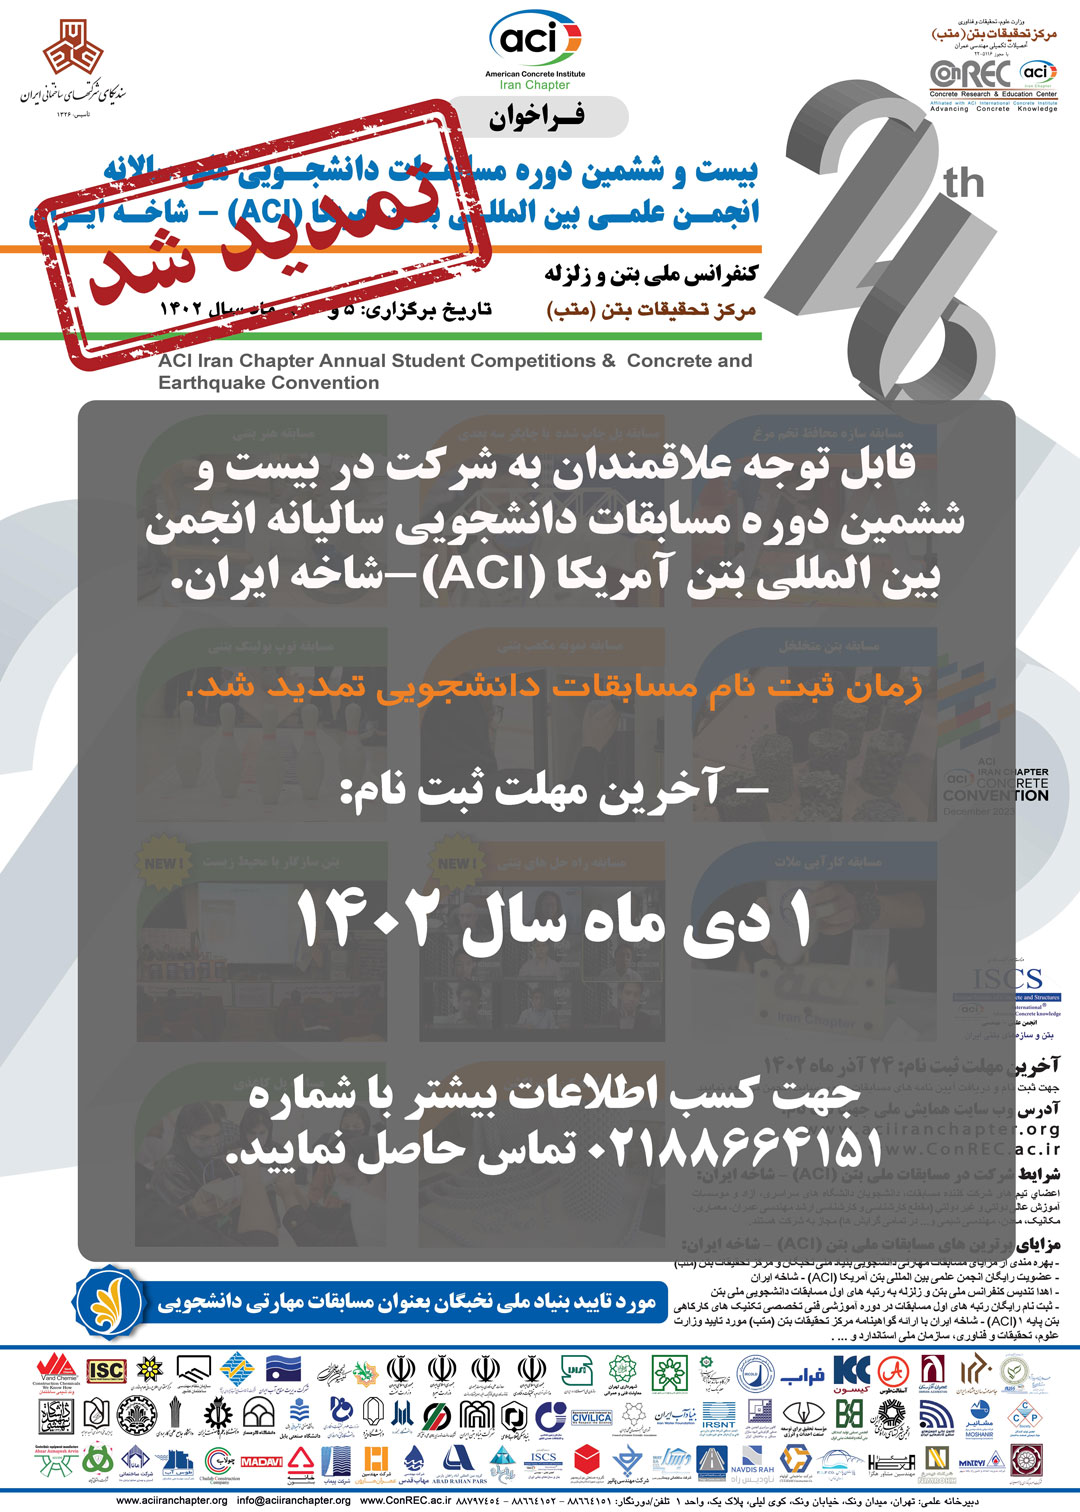 تمدید مهلت ثبت نام در مسابقات ملی بتن ACI - شاخه ایران تا ۱ دی ماه